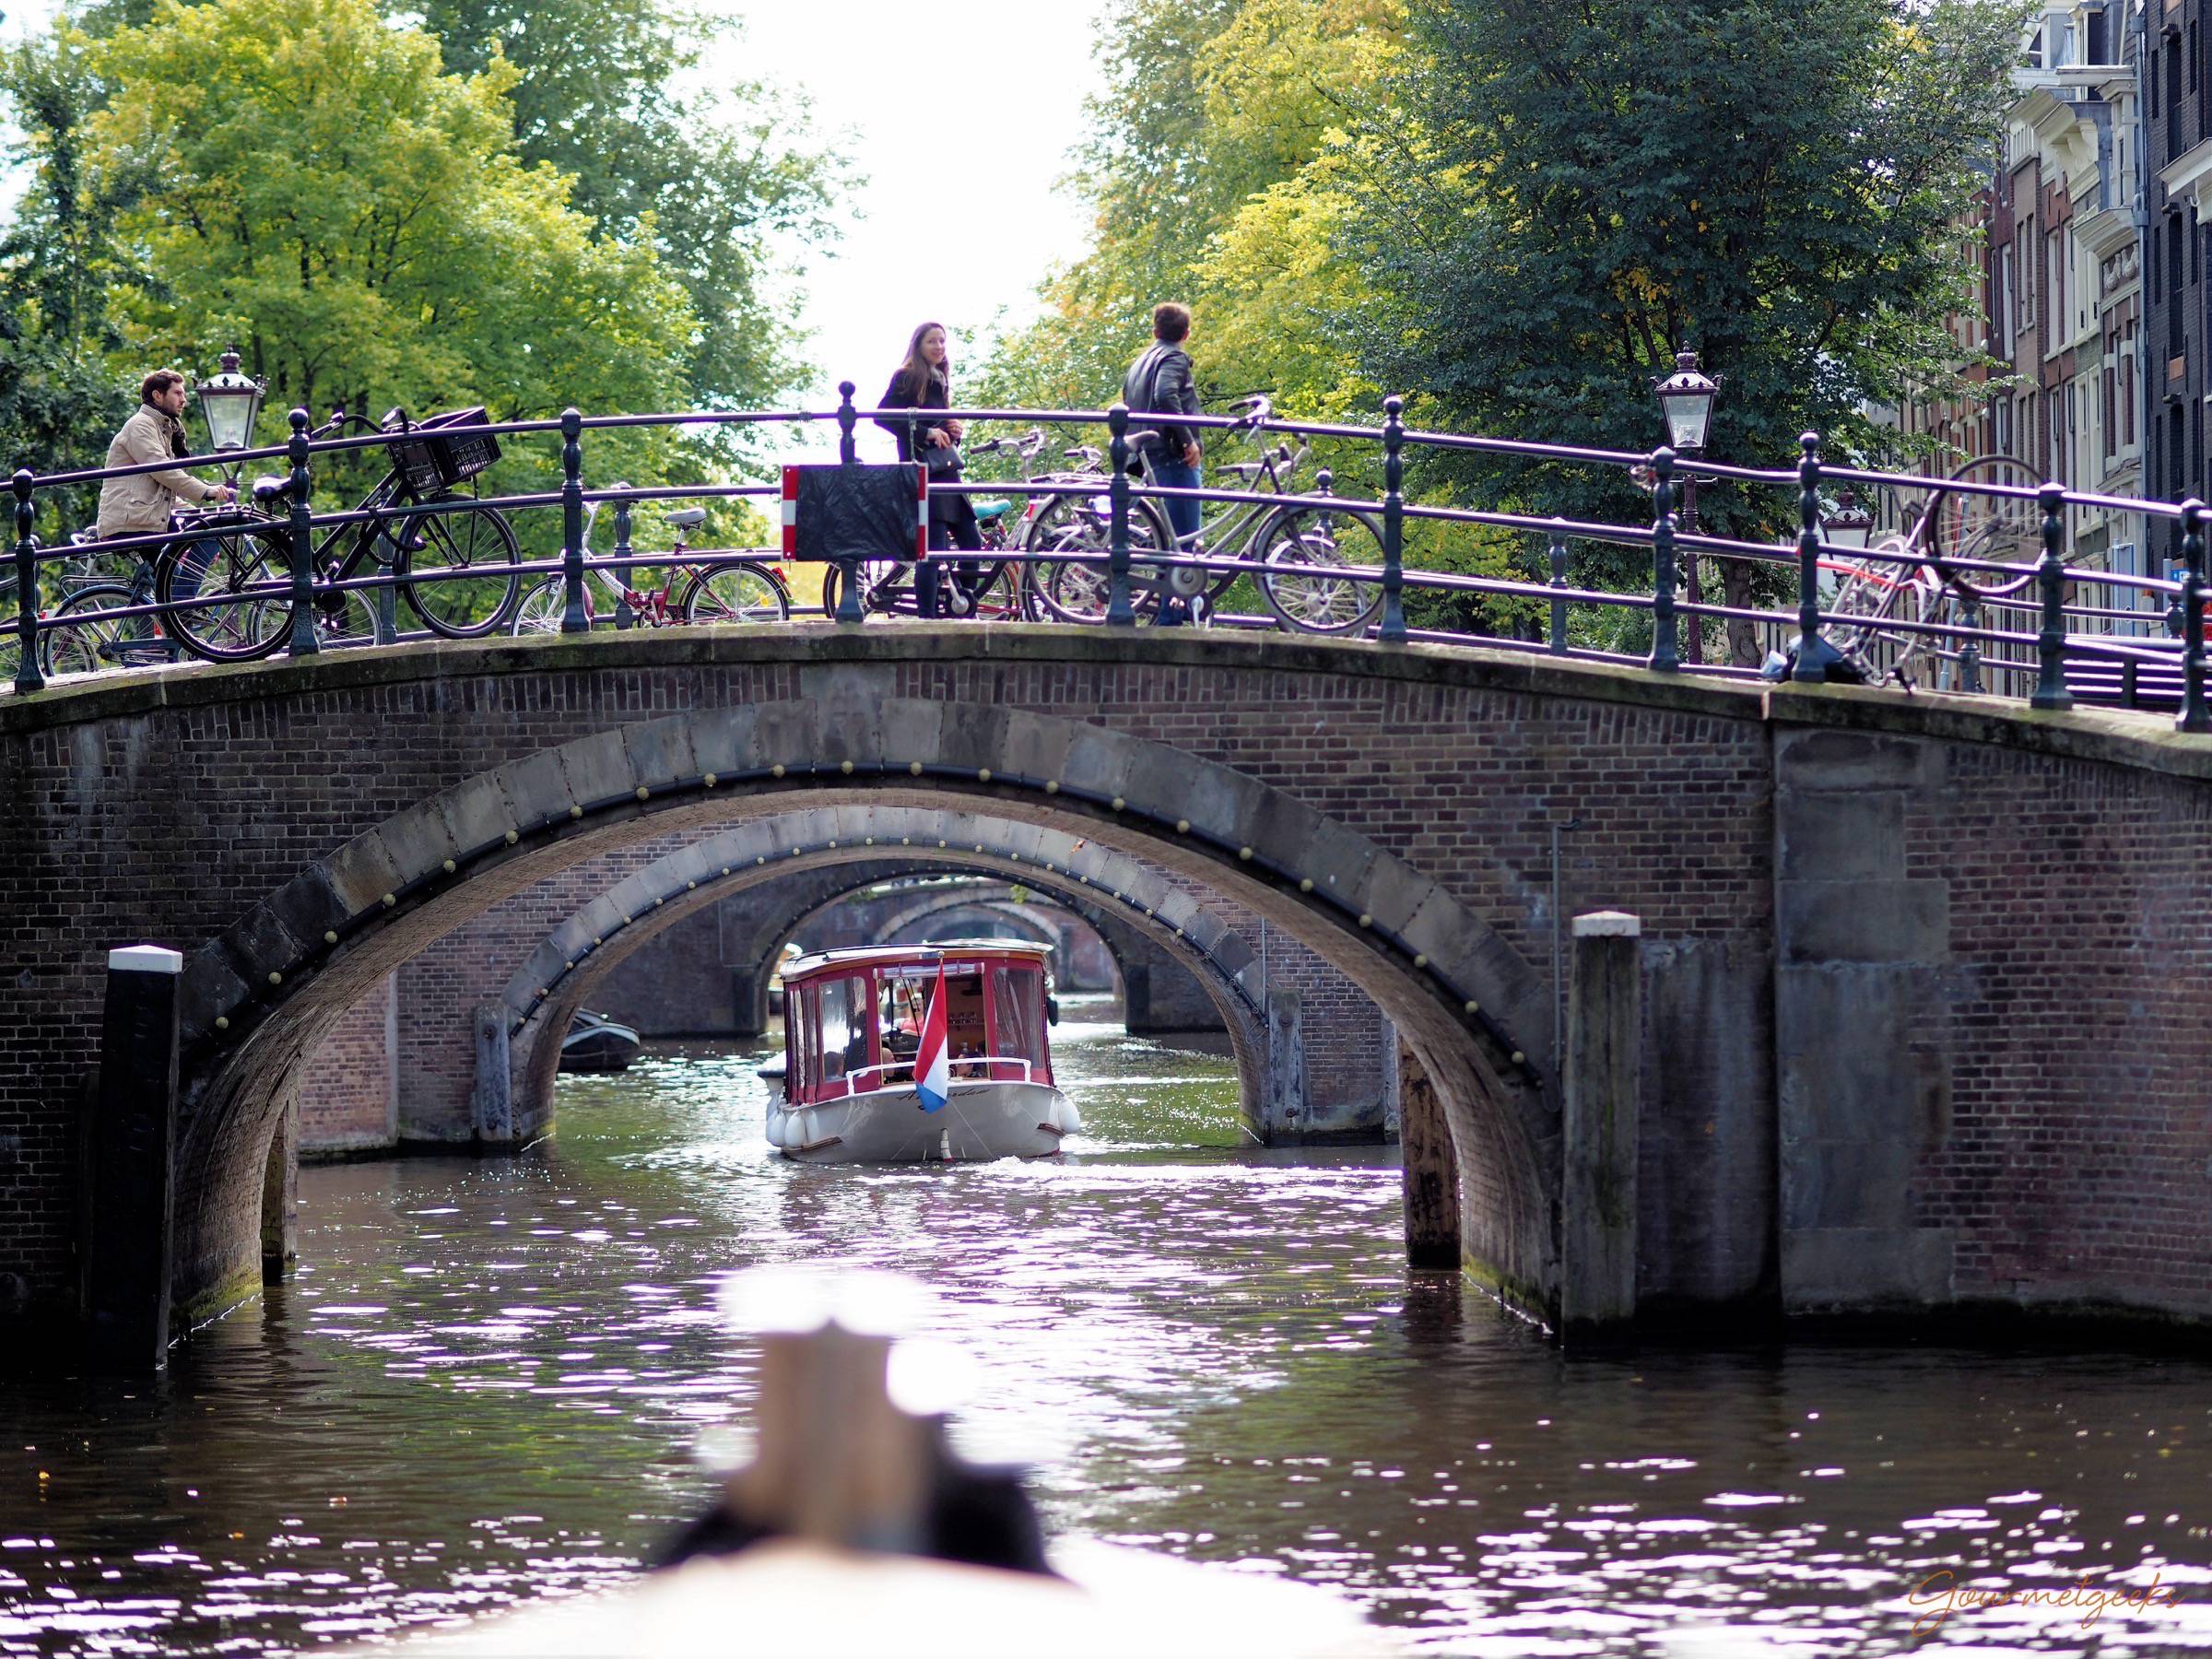 Wunderbar - Amsterdam vom Wasser aus erleben